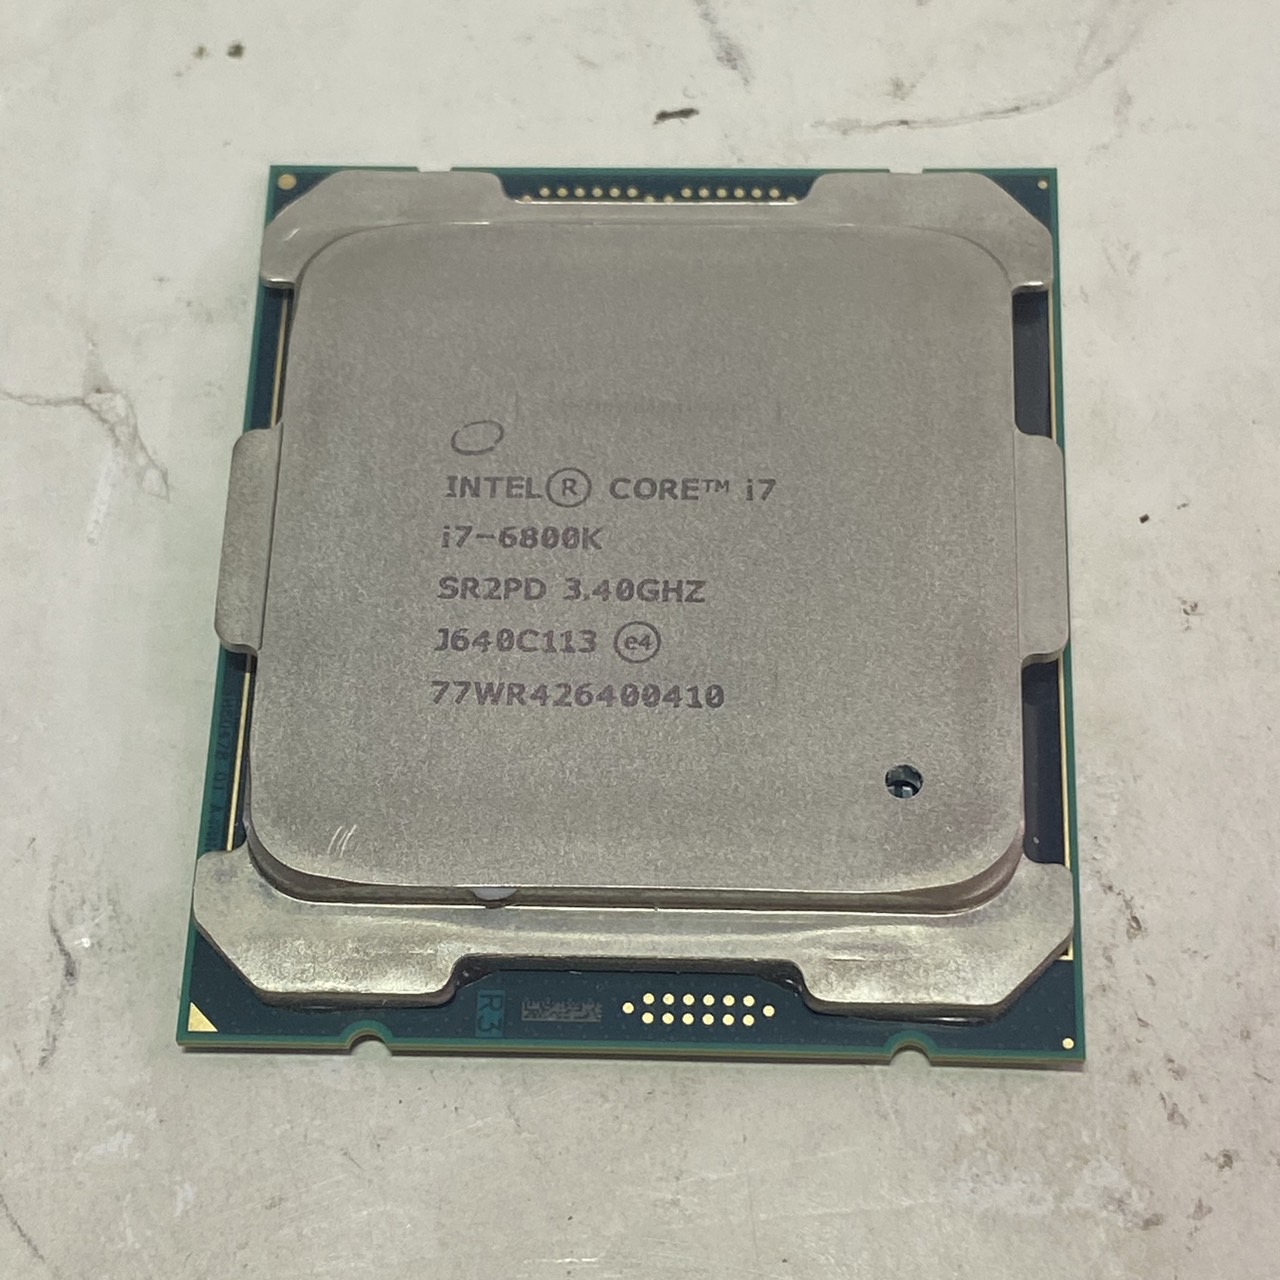 Intel(インテル) Core i7-6800K 3.40GHzの激安通販 - パソコンショップパウ